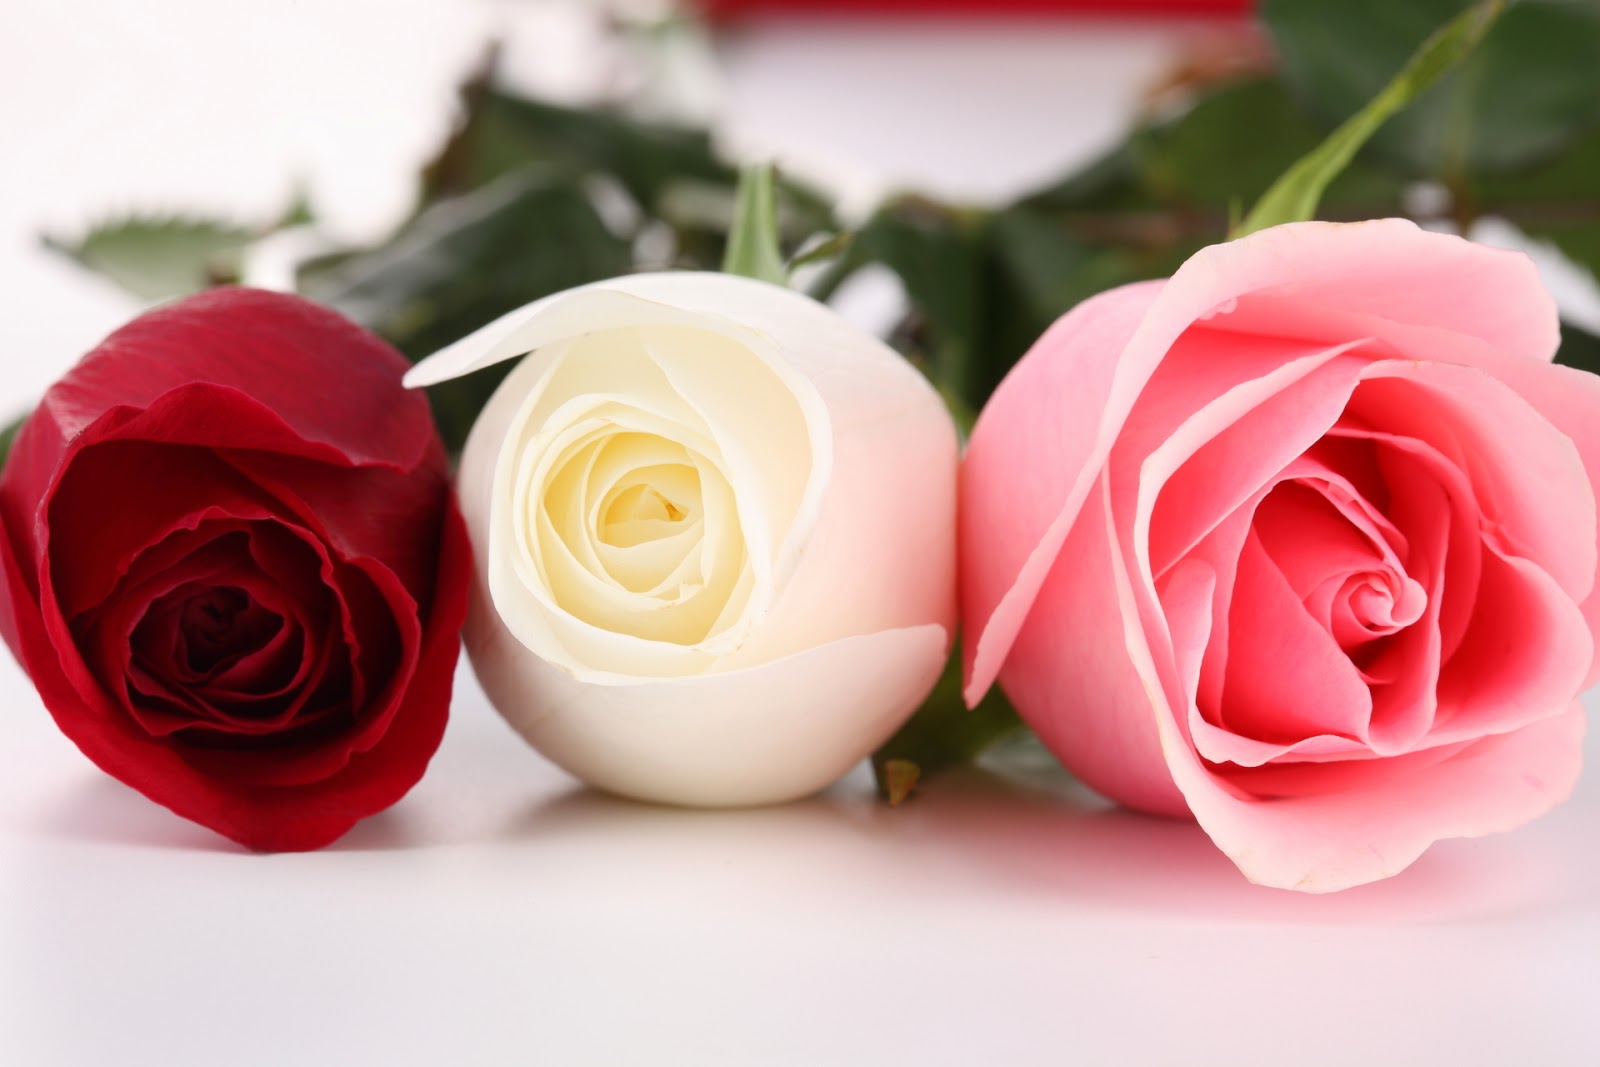 متجر على الانترنت شراء شعبية أعلى أزياء اجمل الورود والازهار